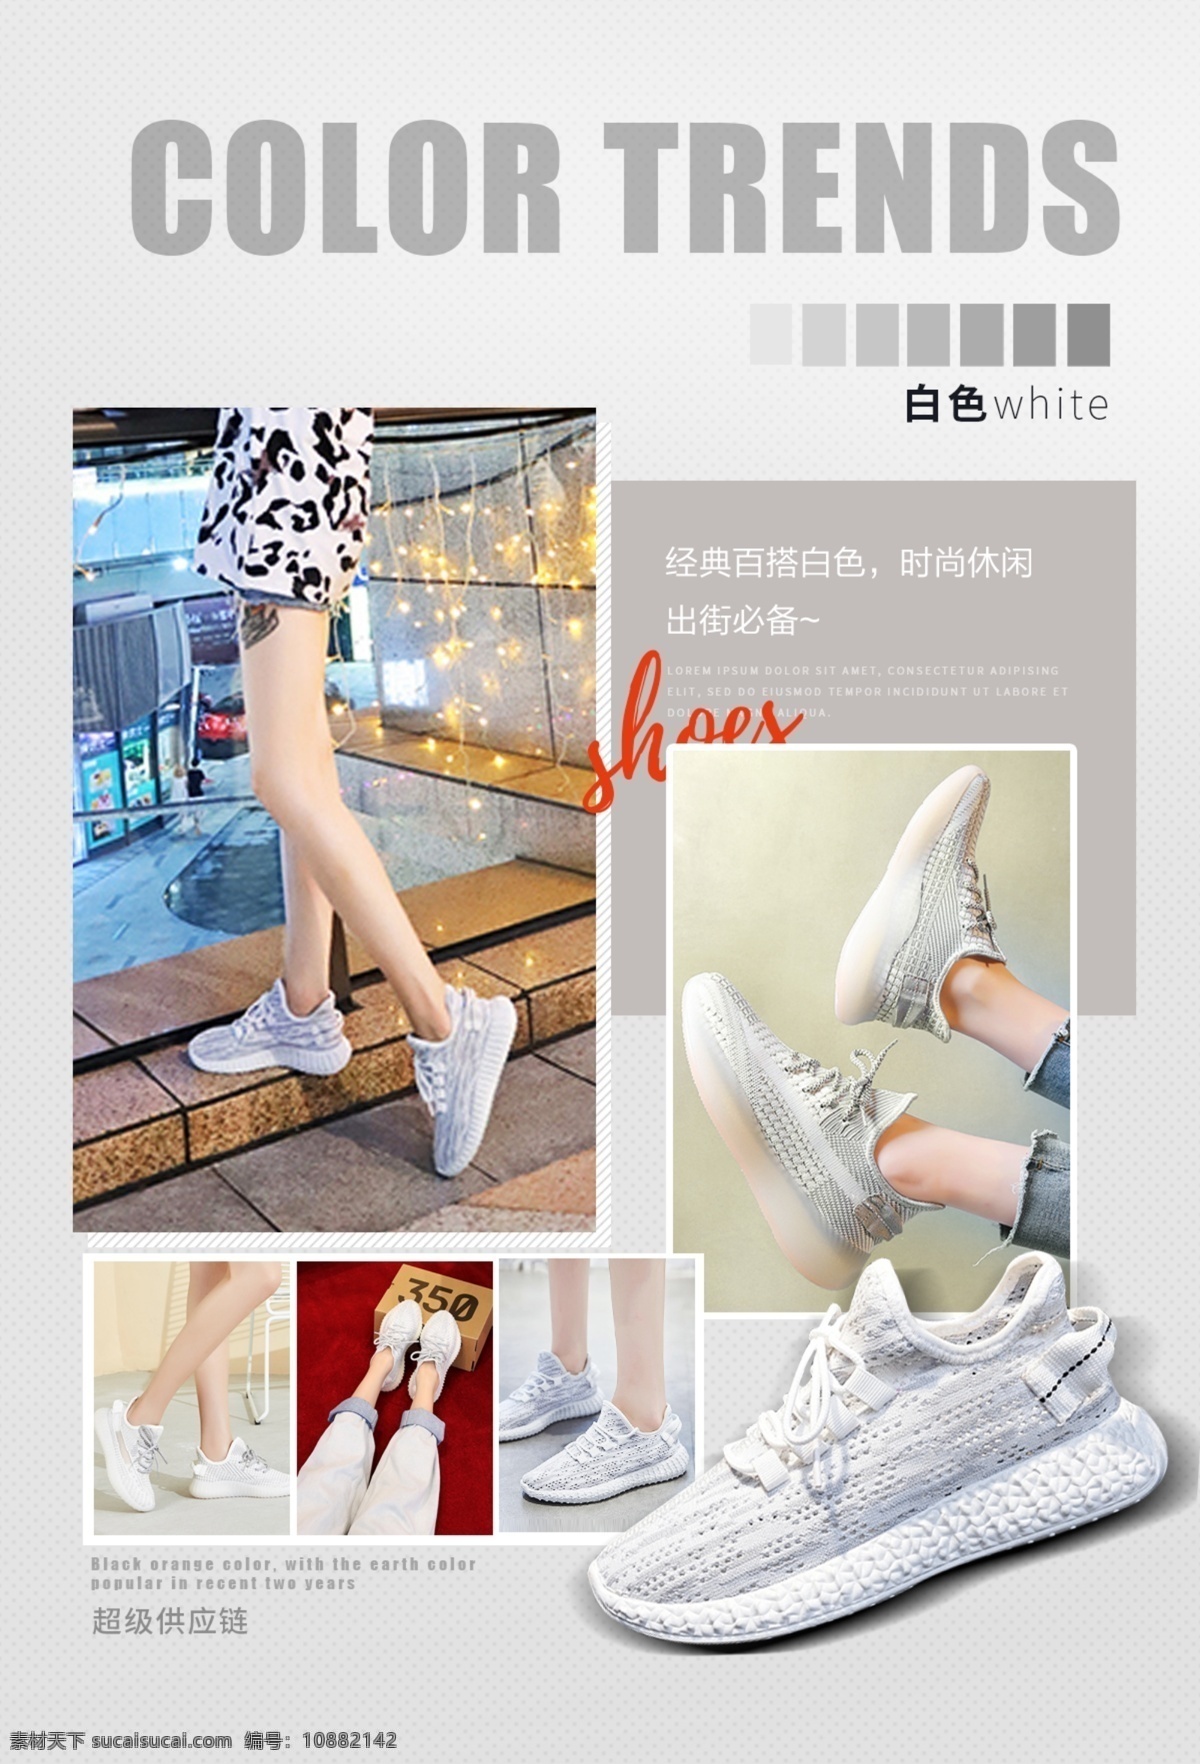 鞋子 流行趋势 鞋子流行趋势 色彩资讯 白色 椰子鞋 海报 广告 文字 排版